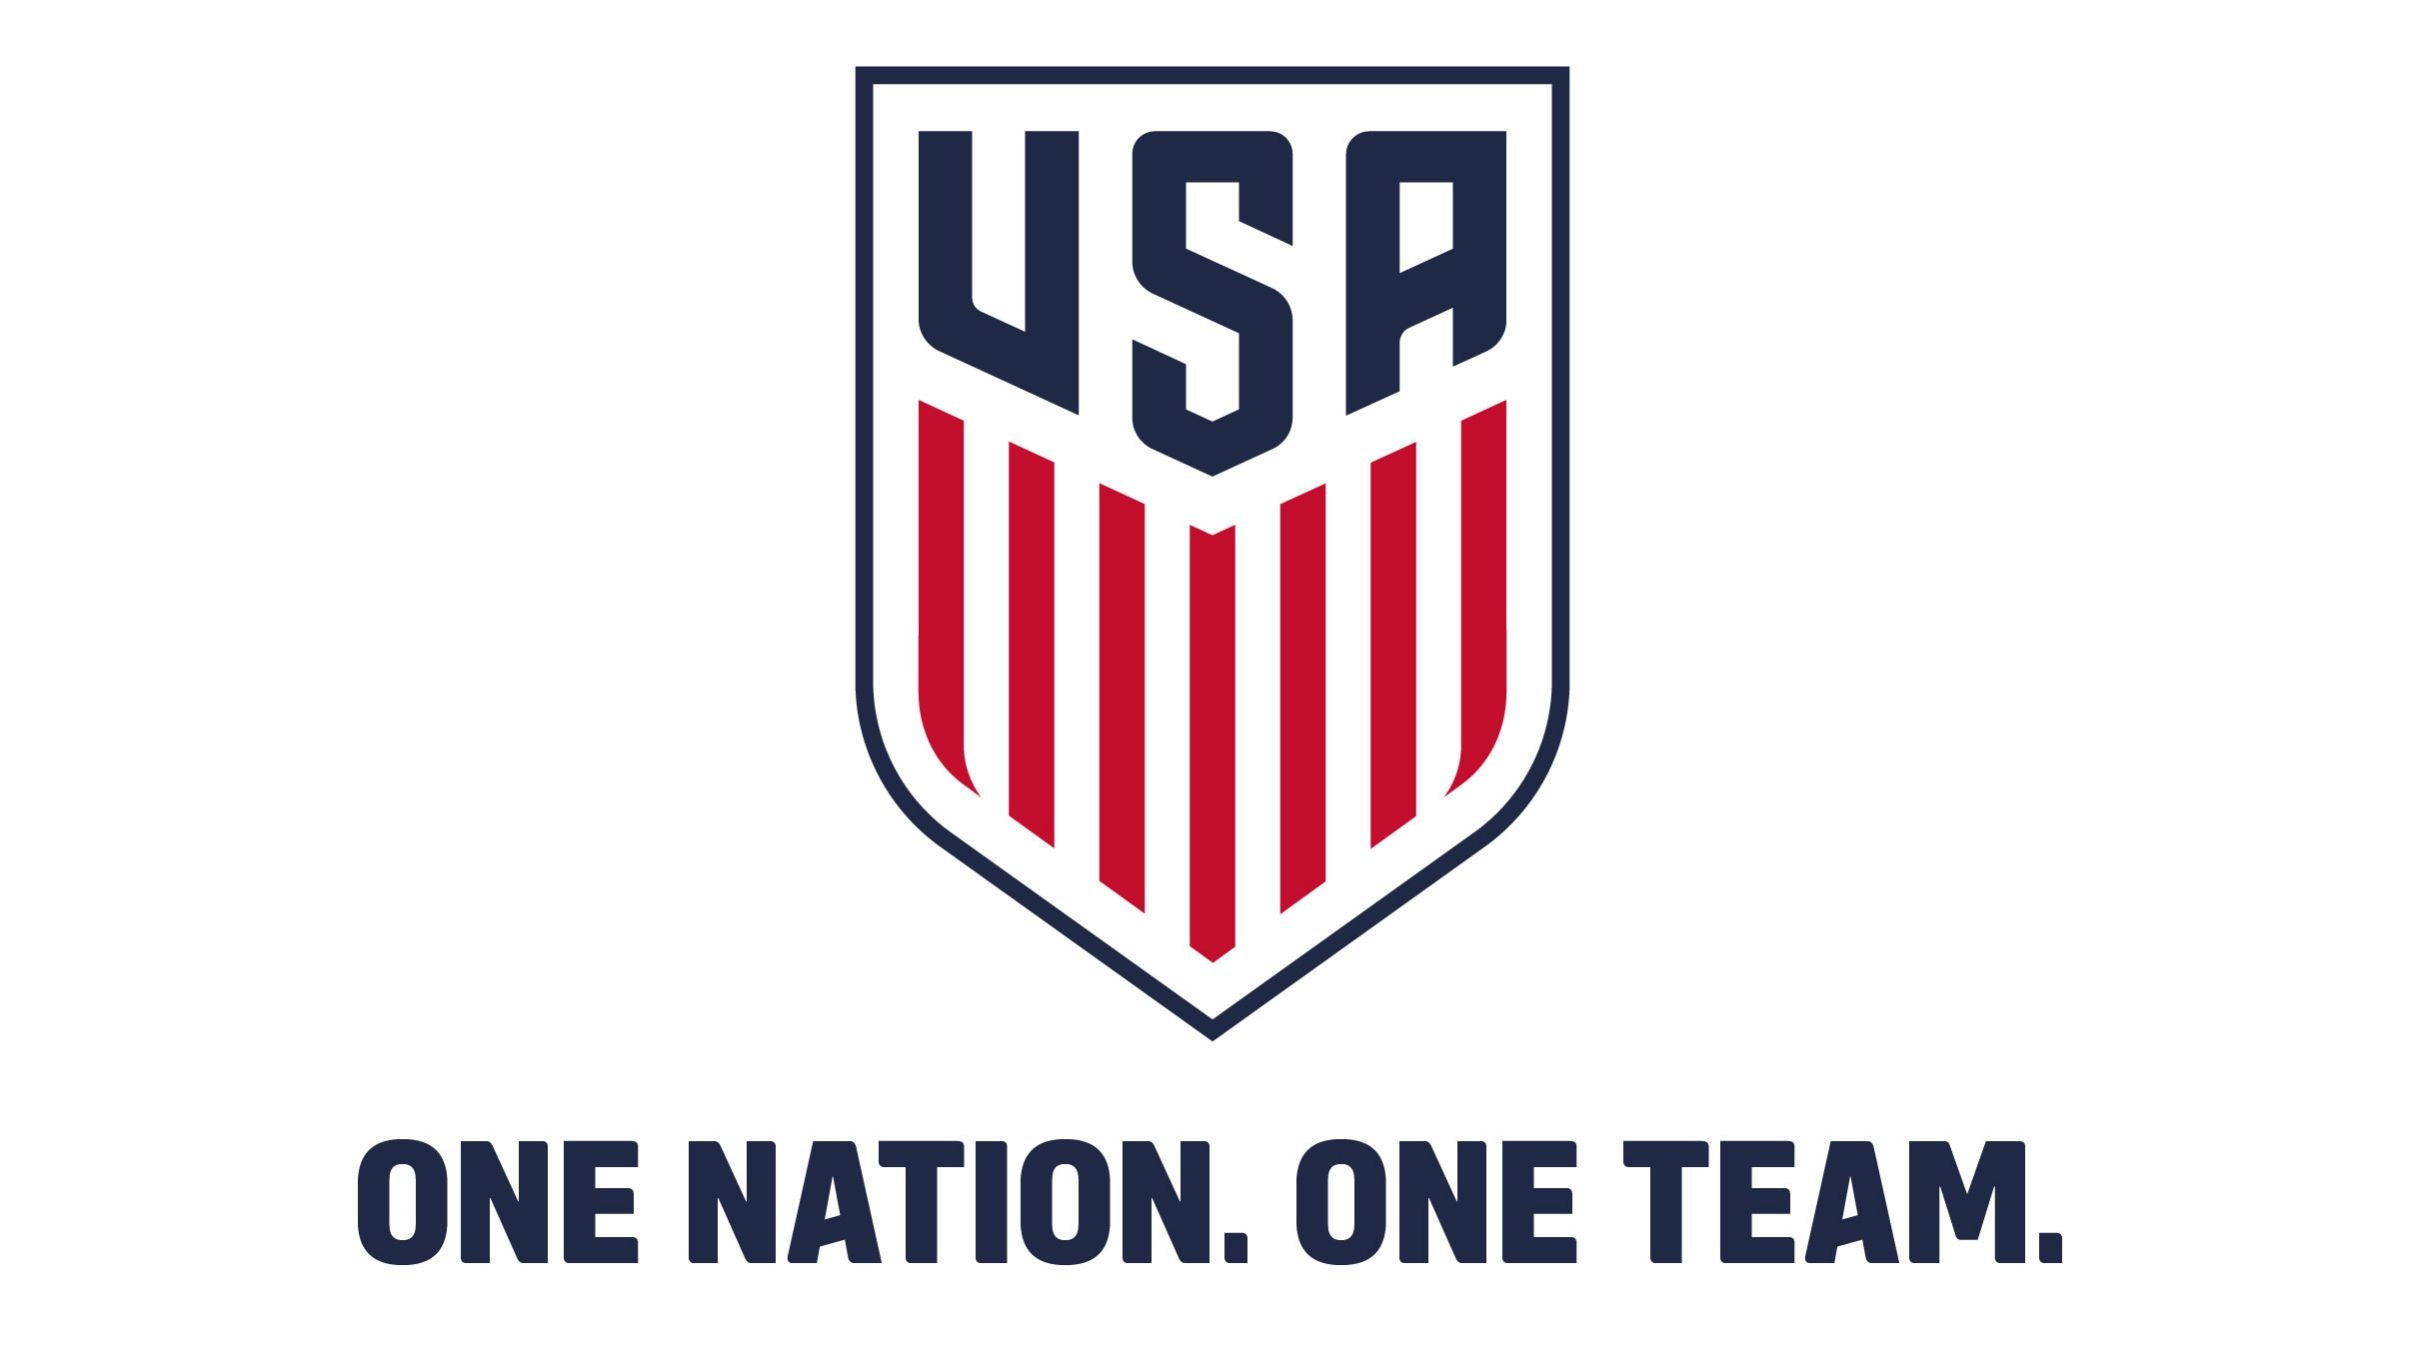 U.S. Men's National Team vs Slovenia in San Antonio promo photo for General presale offer code